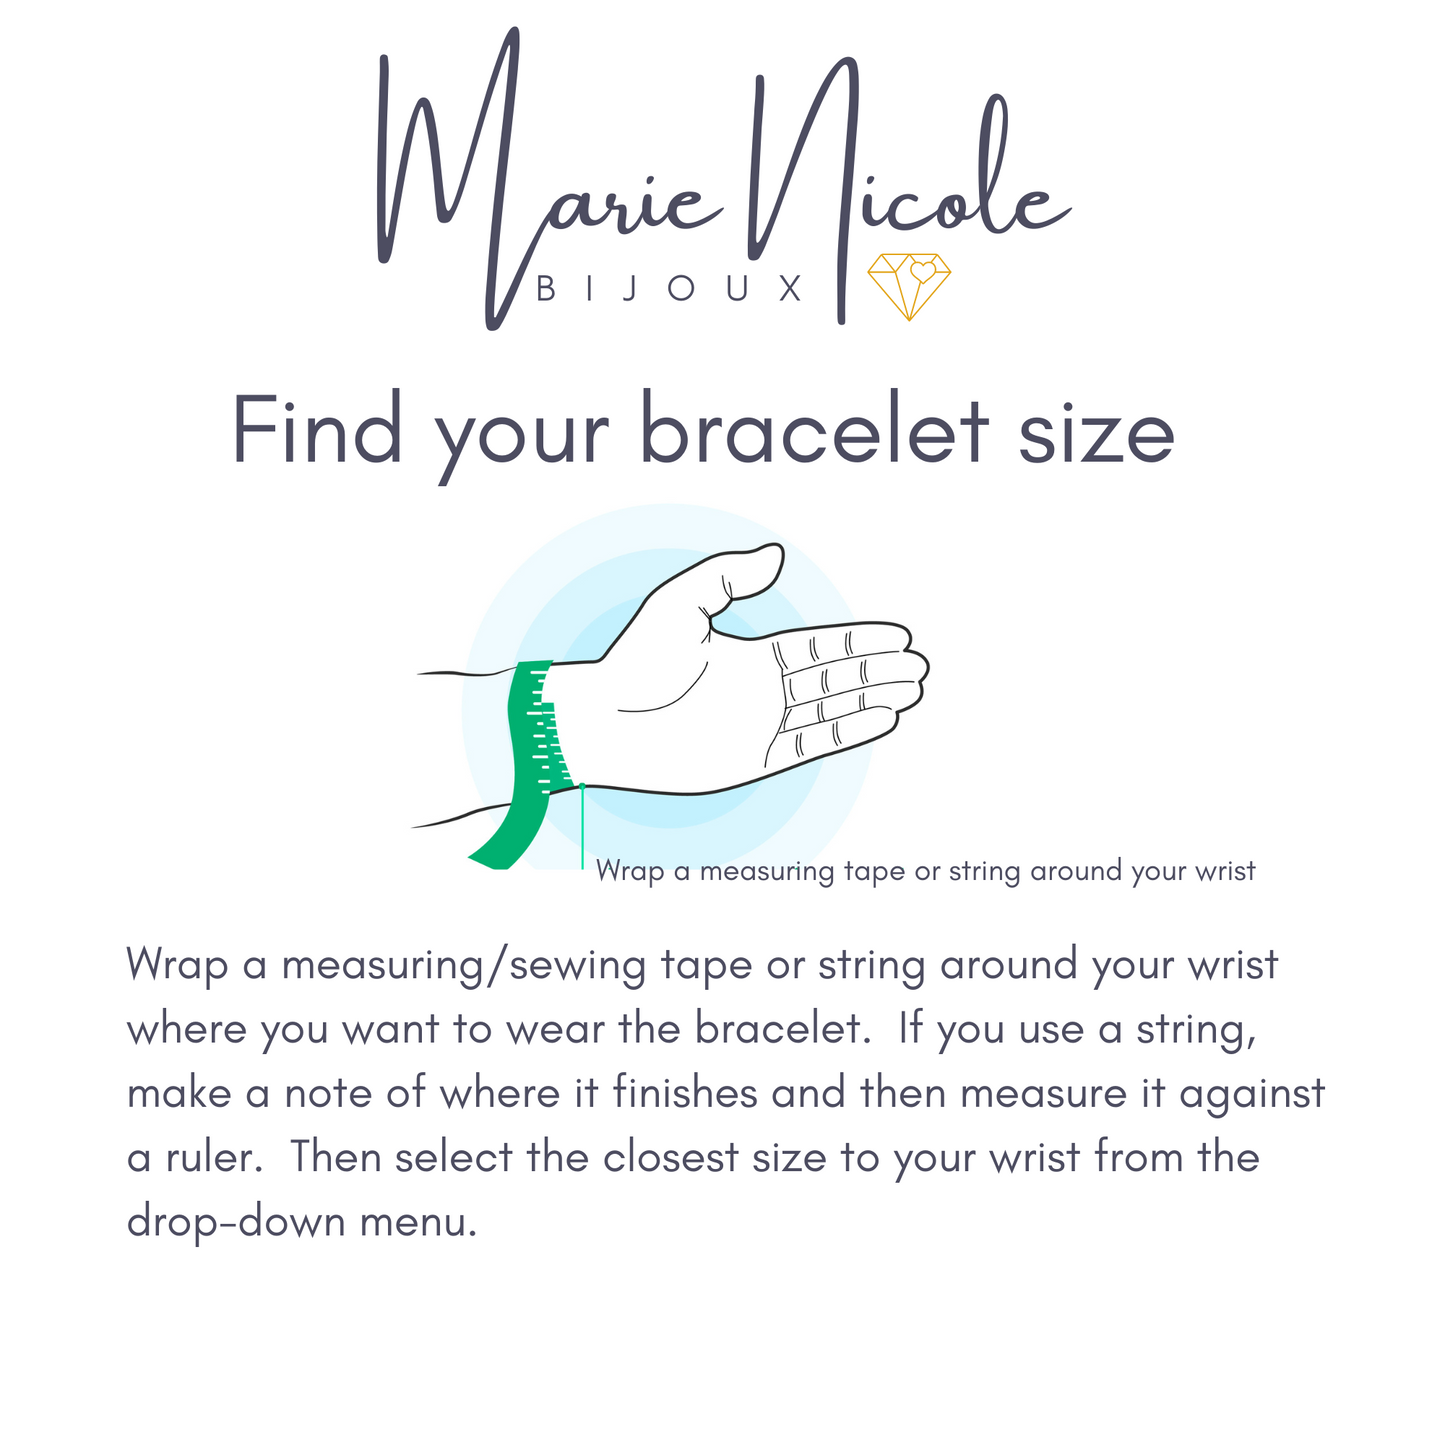 Turquoise sterling silver adjustable bracelet